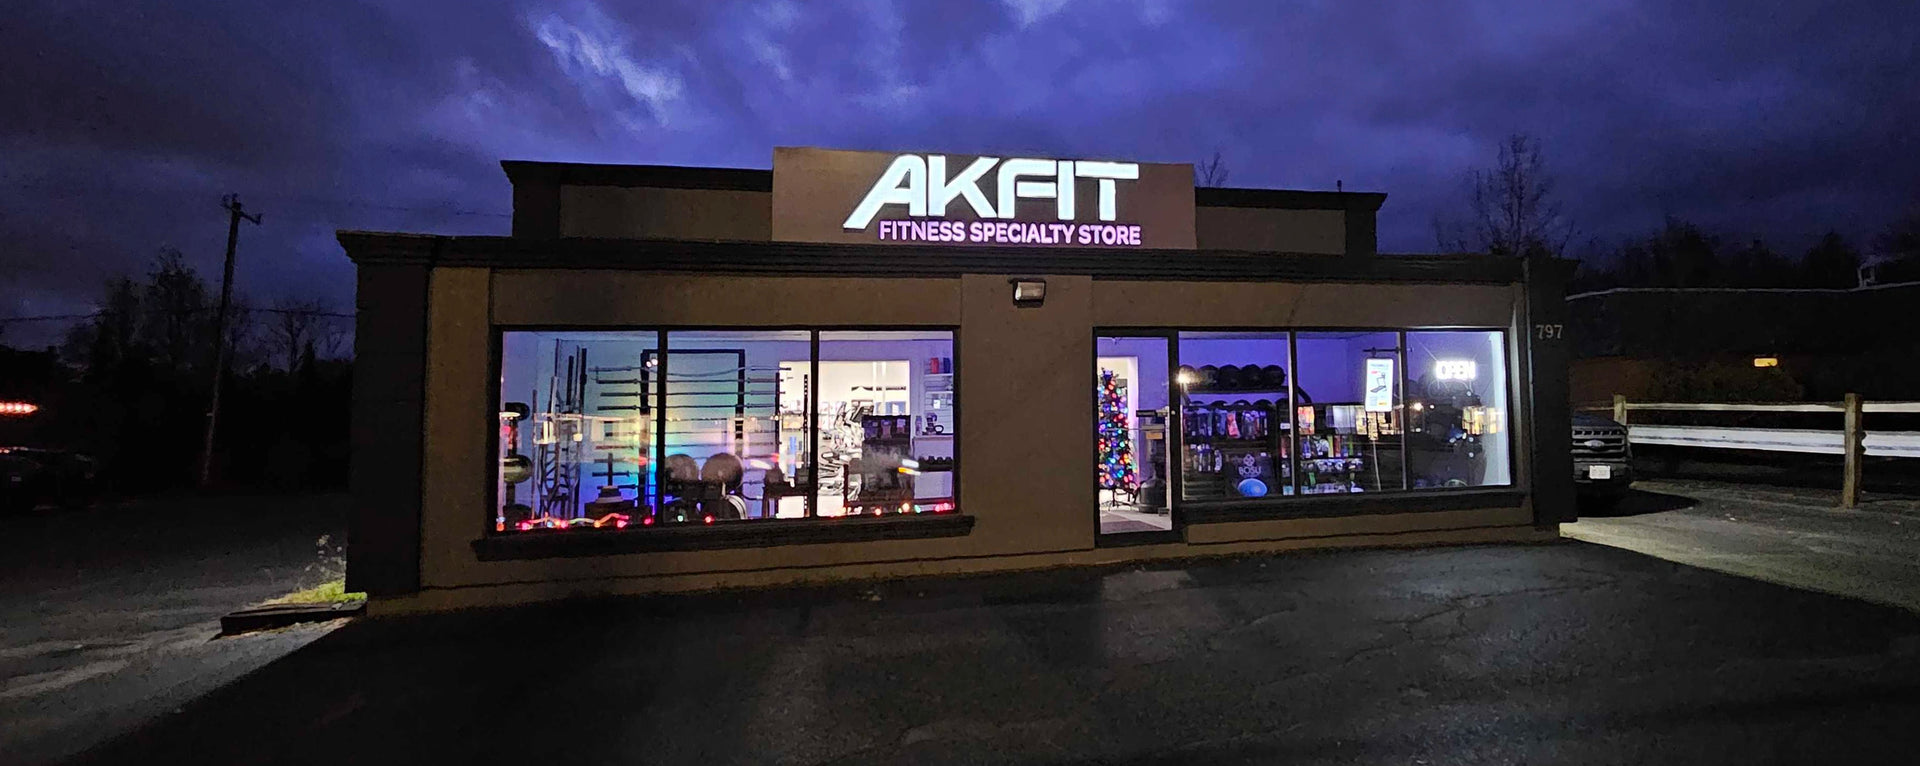 AKFIT Fitness Specialty Store - Sudbury, Ontario